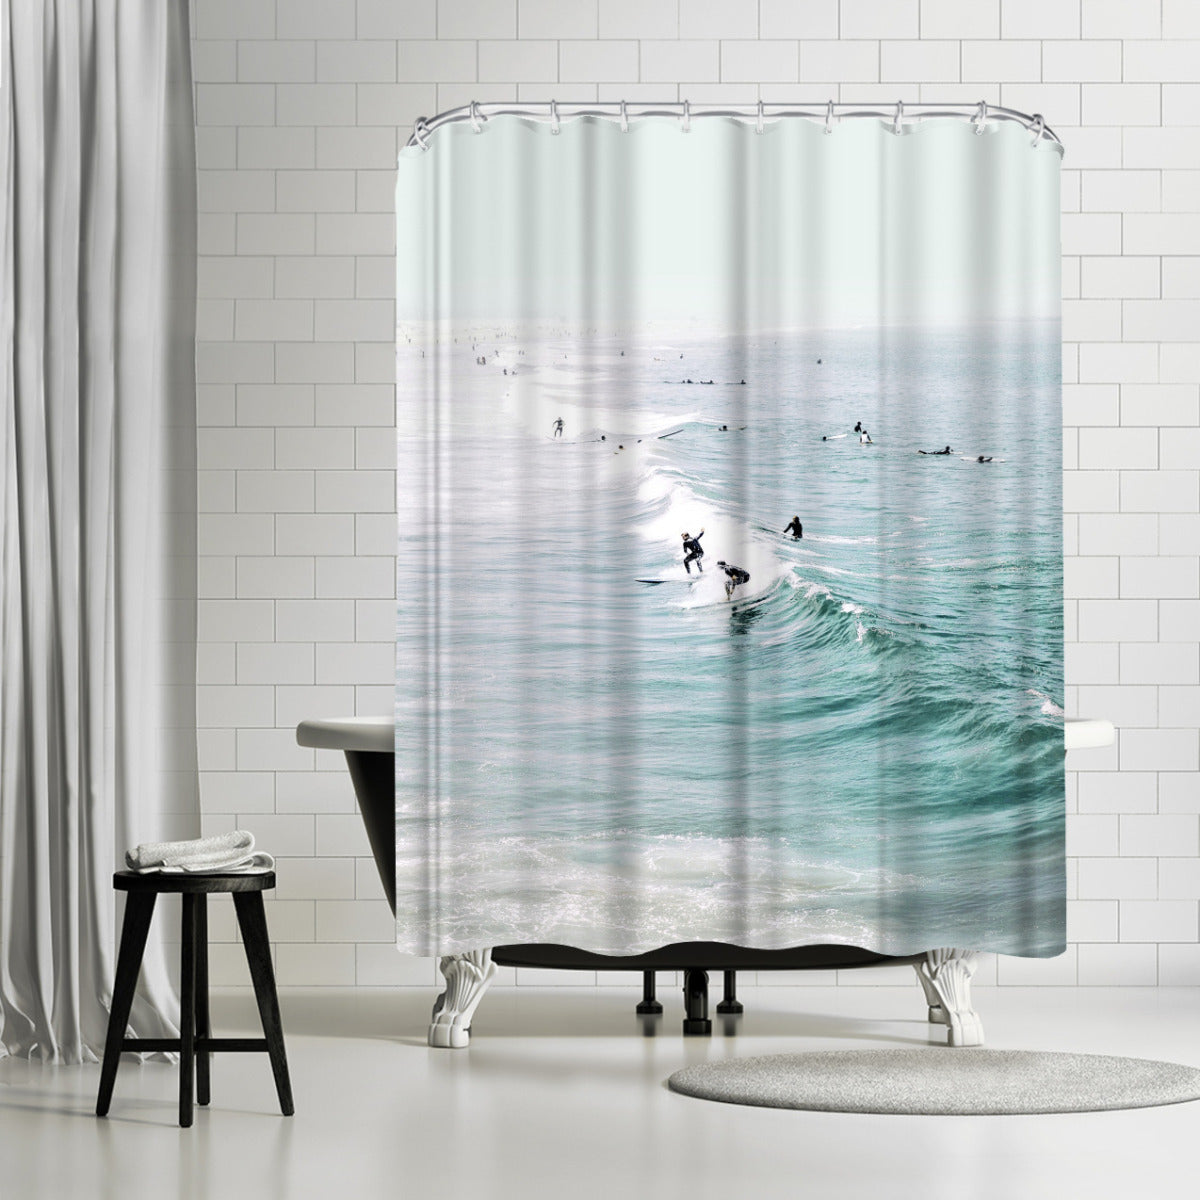 Retro Surfing 1 by Artvir - Shower Curtain, Shower Curtain, 74" X 71"